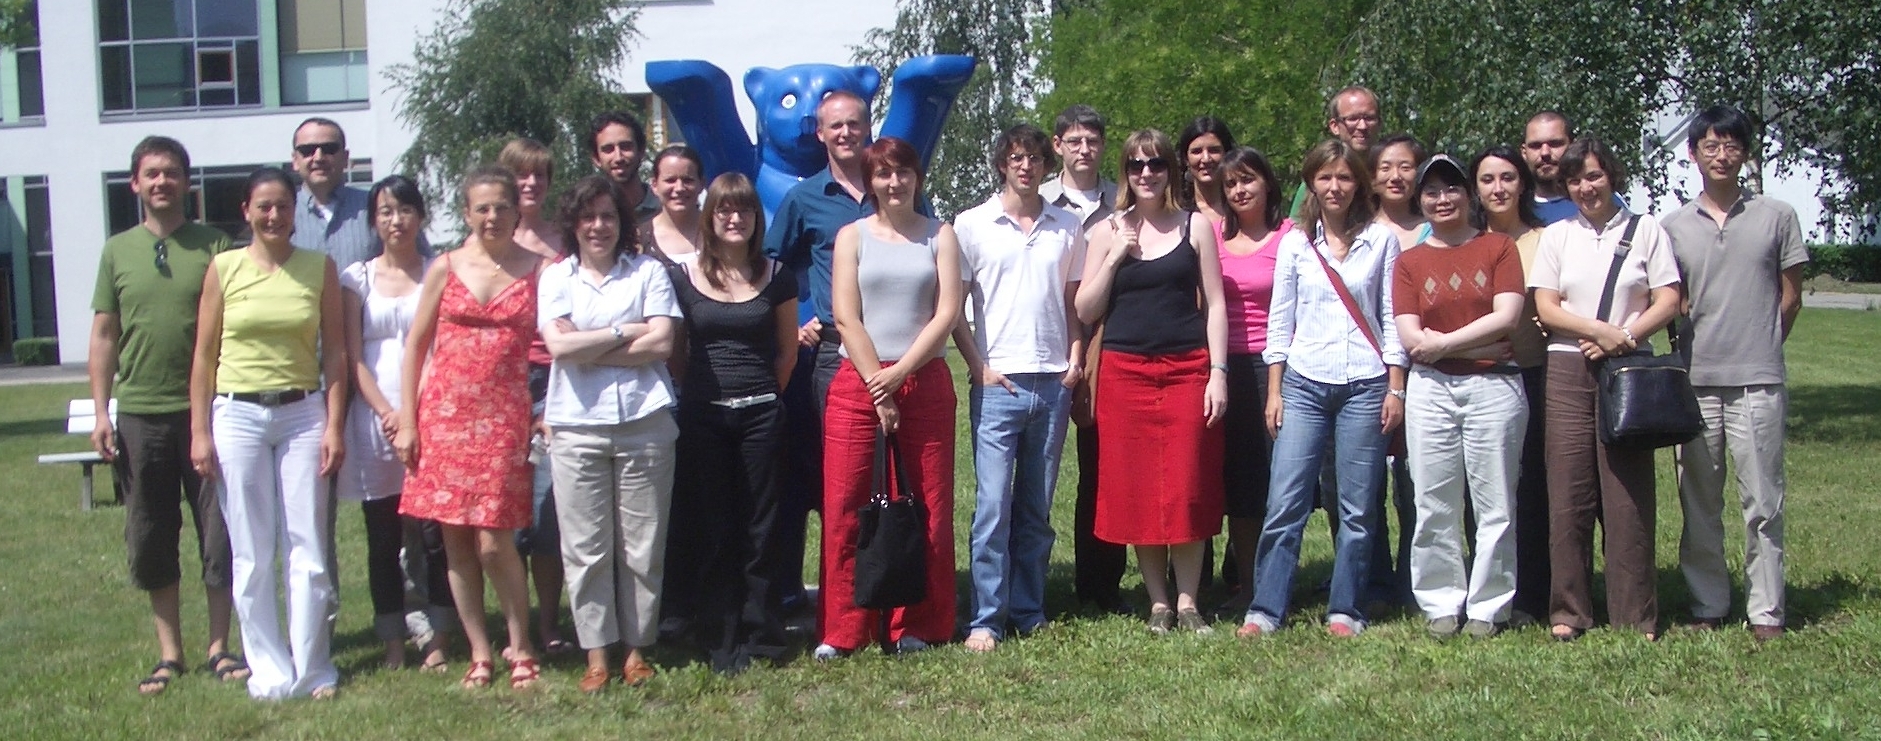 The 2007 Course Participants